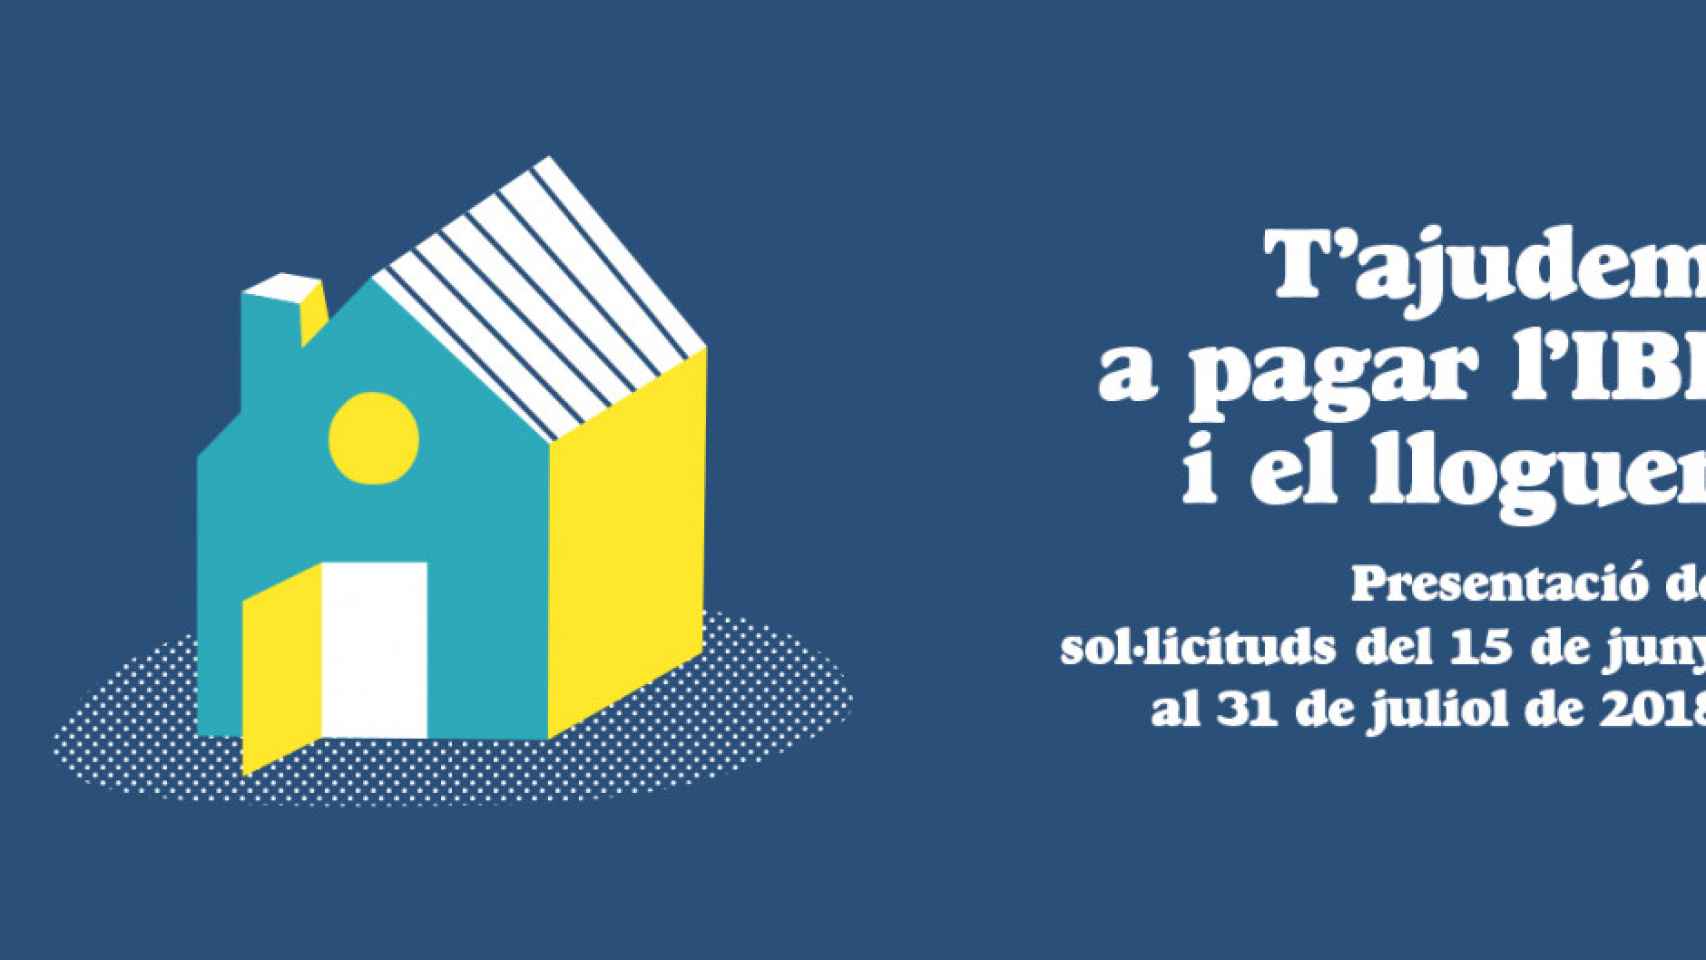 Cartel publicitario del año pasado para solicitar las ayudas para pagar el IBI / AJUNTAMENT DE BARCELONA